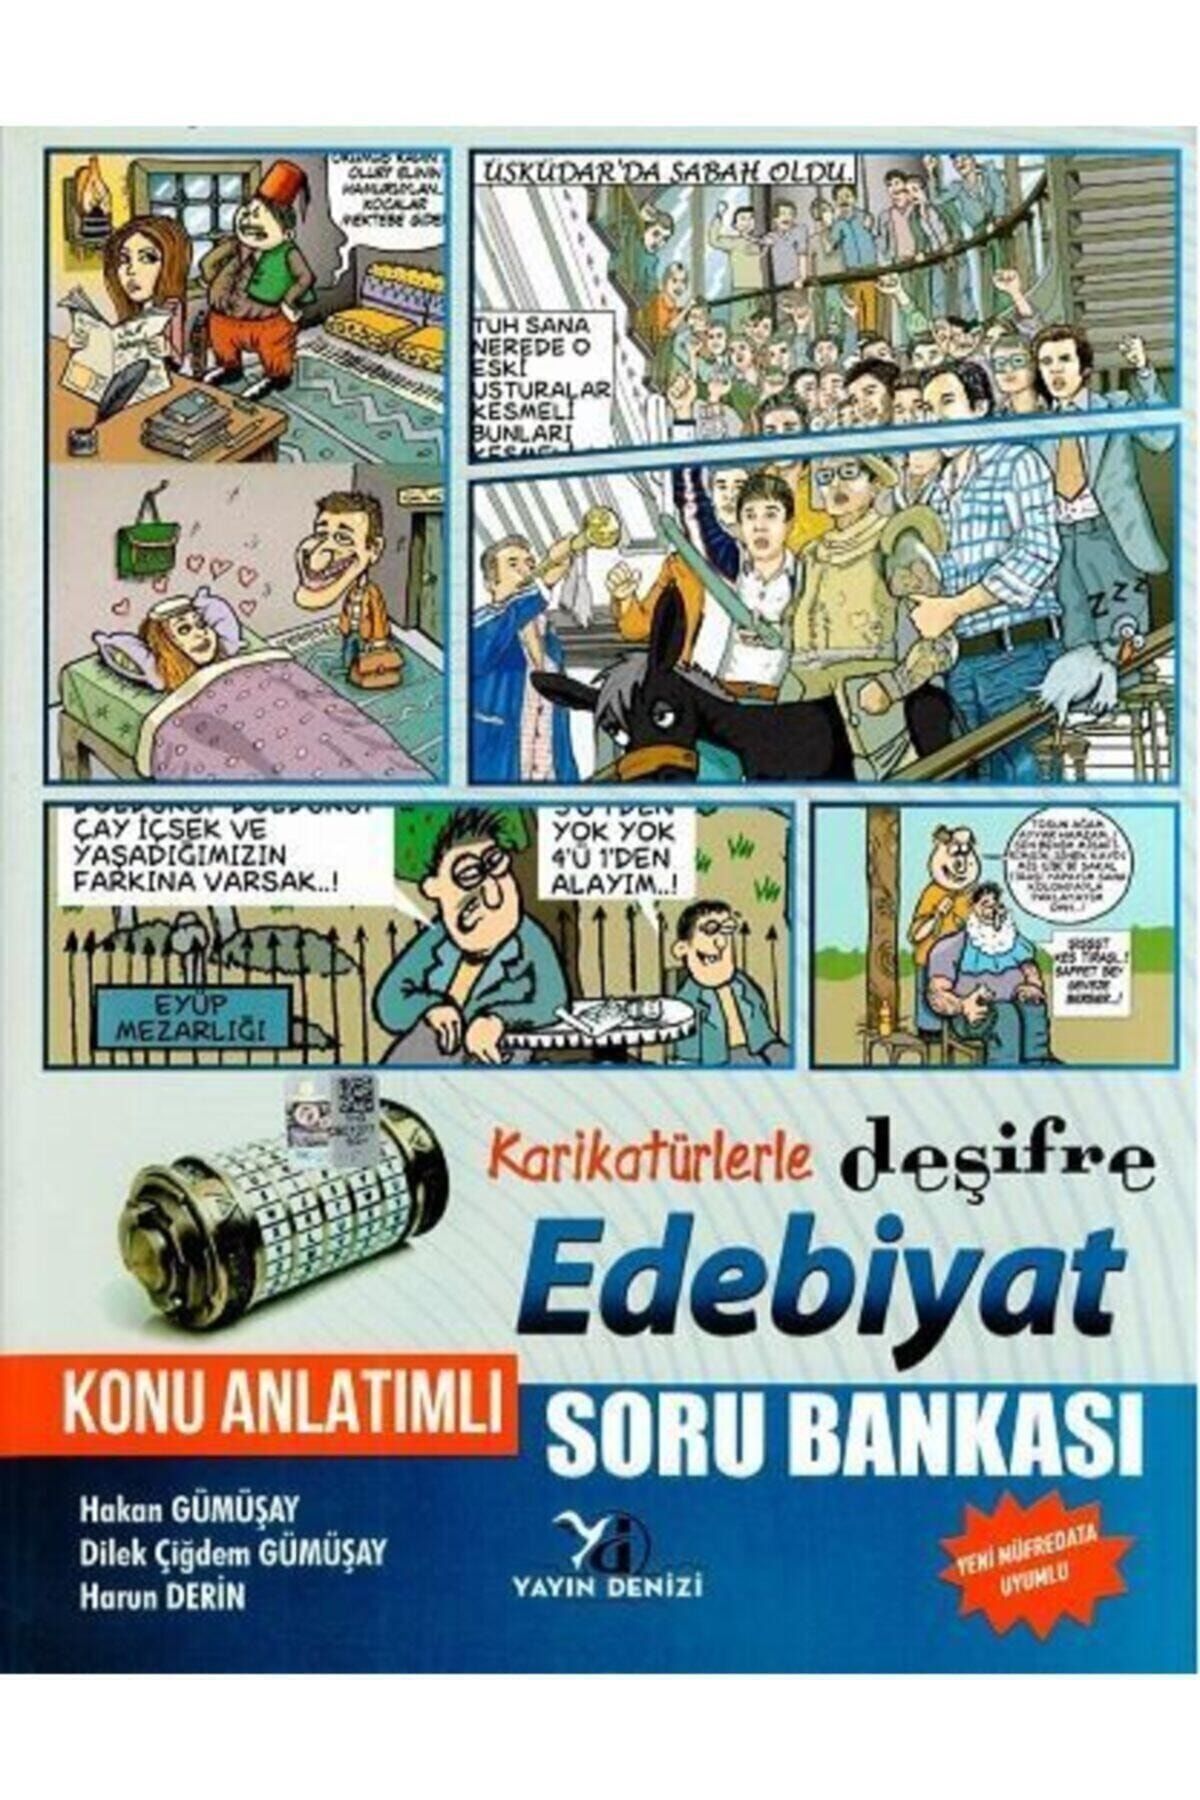 Yayın Denizi Yayınları Yayın Denizi Ayt Edebiyat Karikatürlerle Deşifre